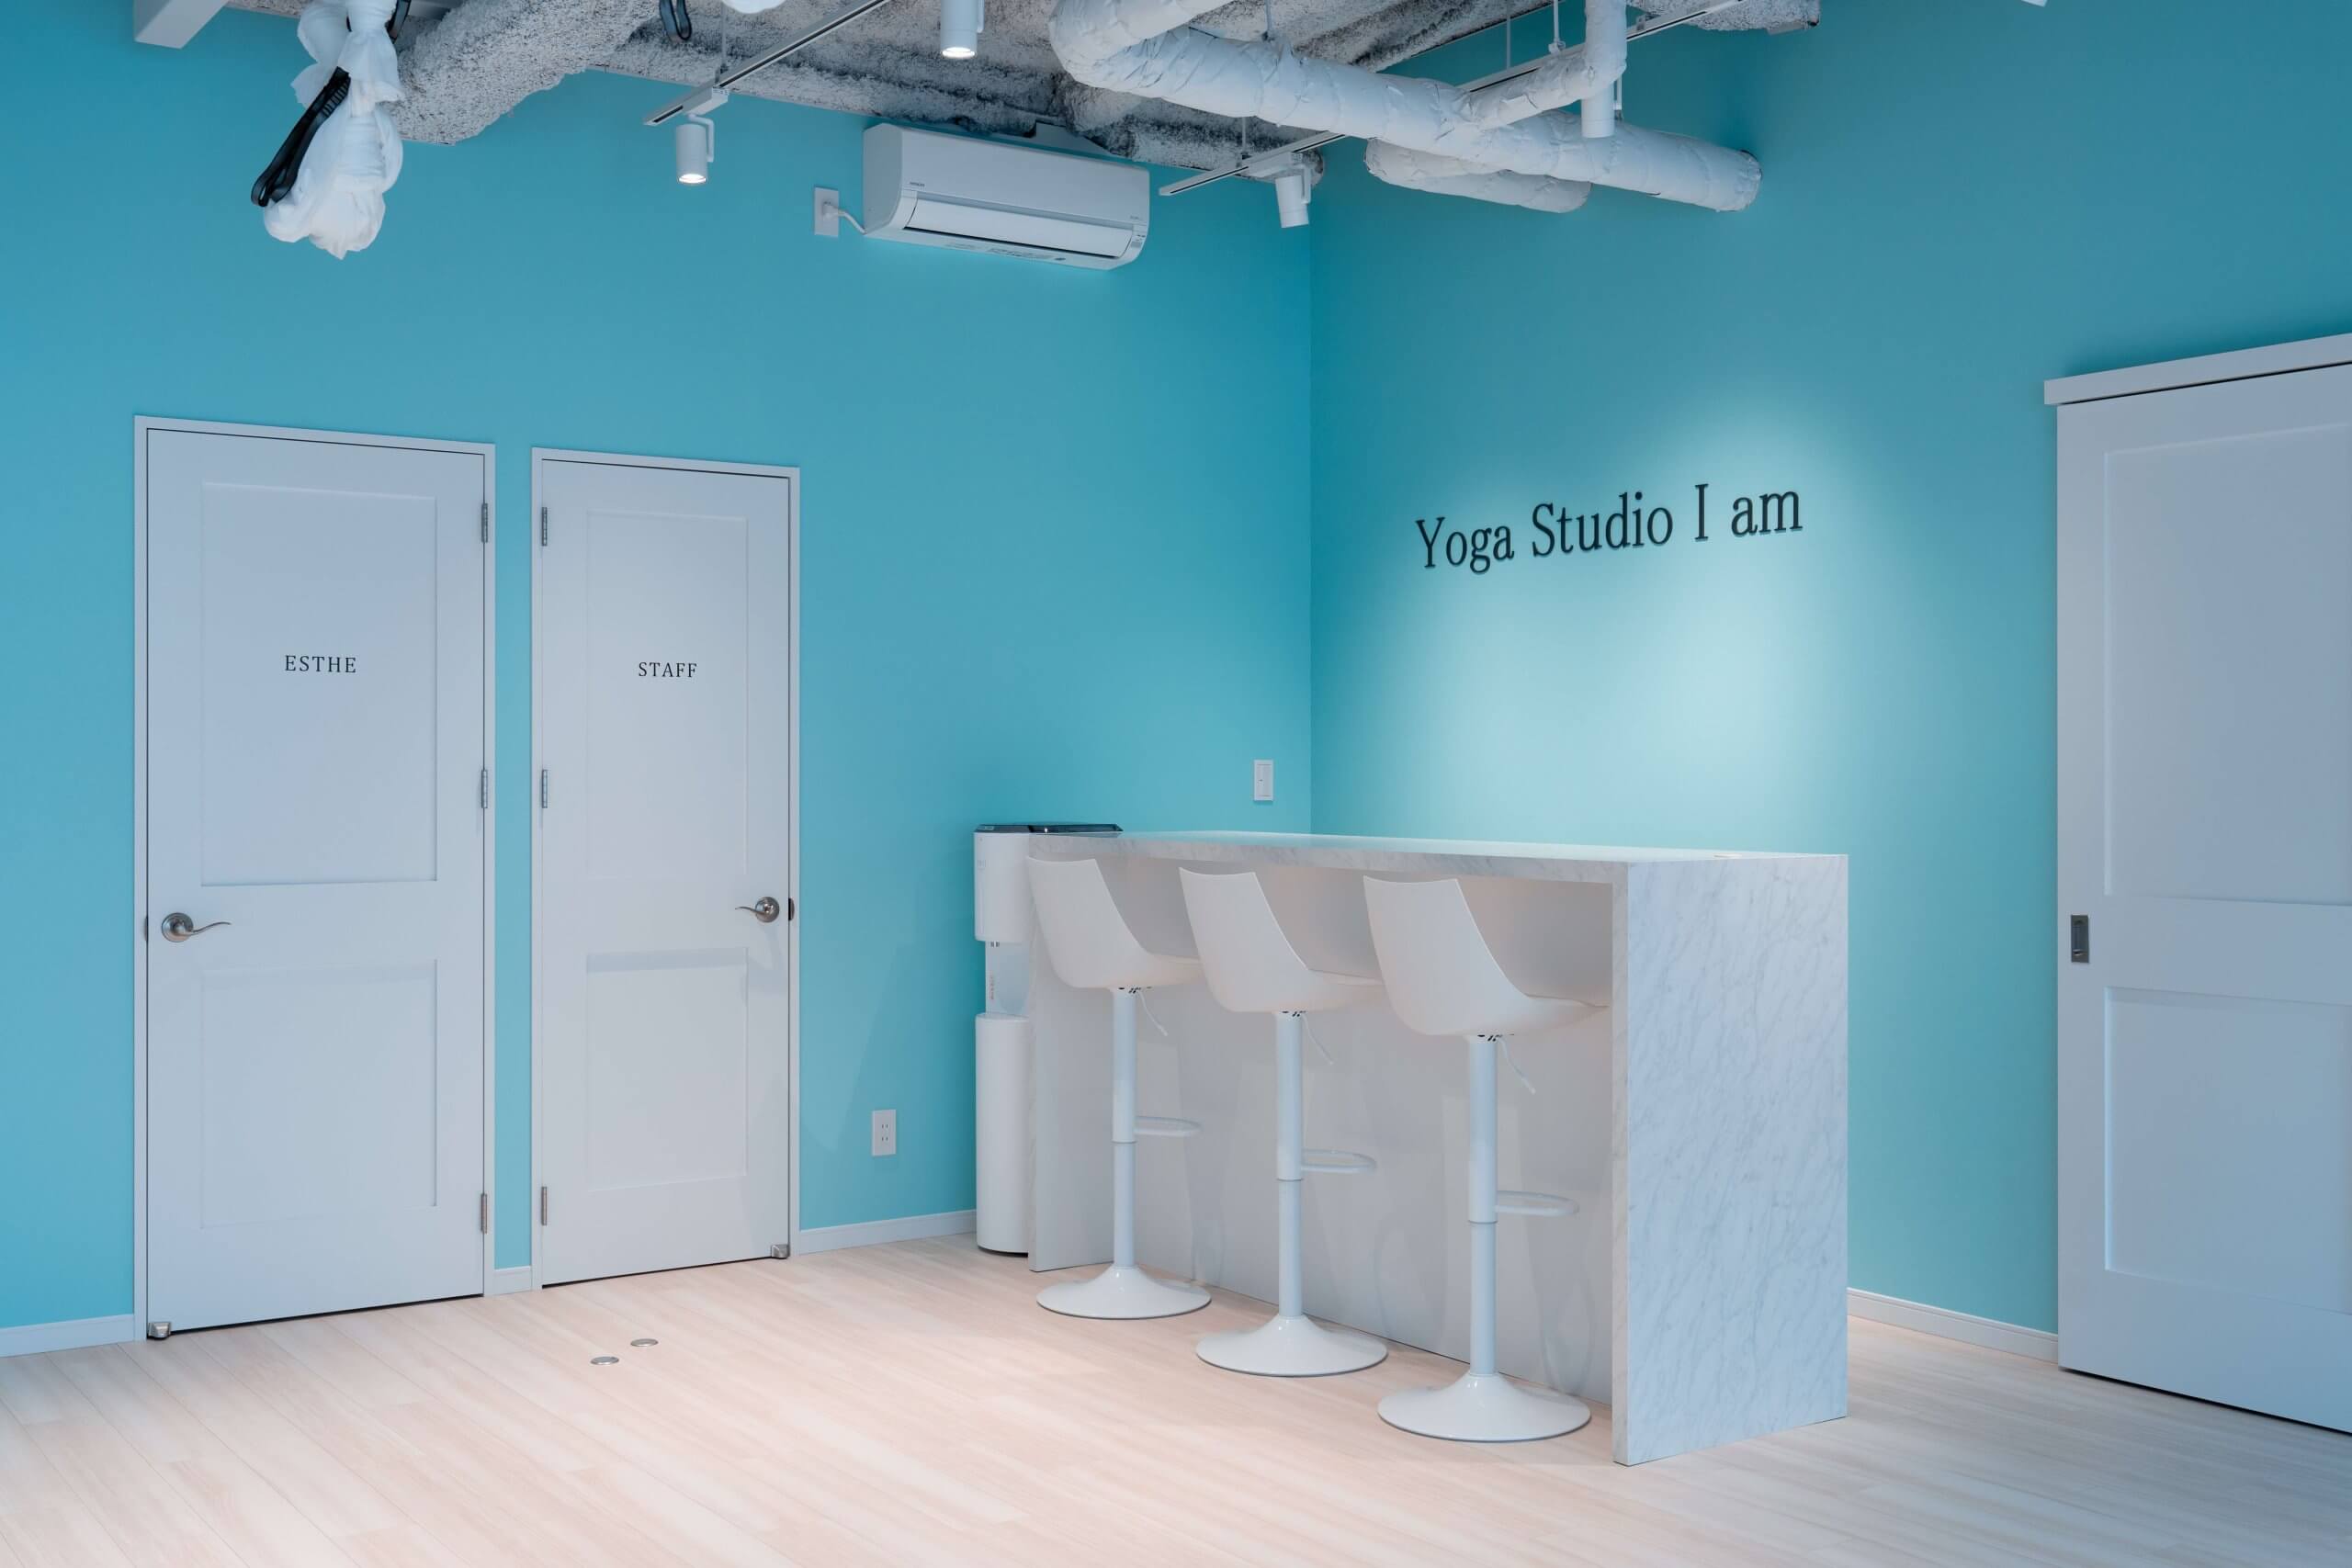 Yoga Studio I am 様